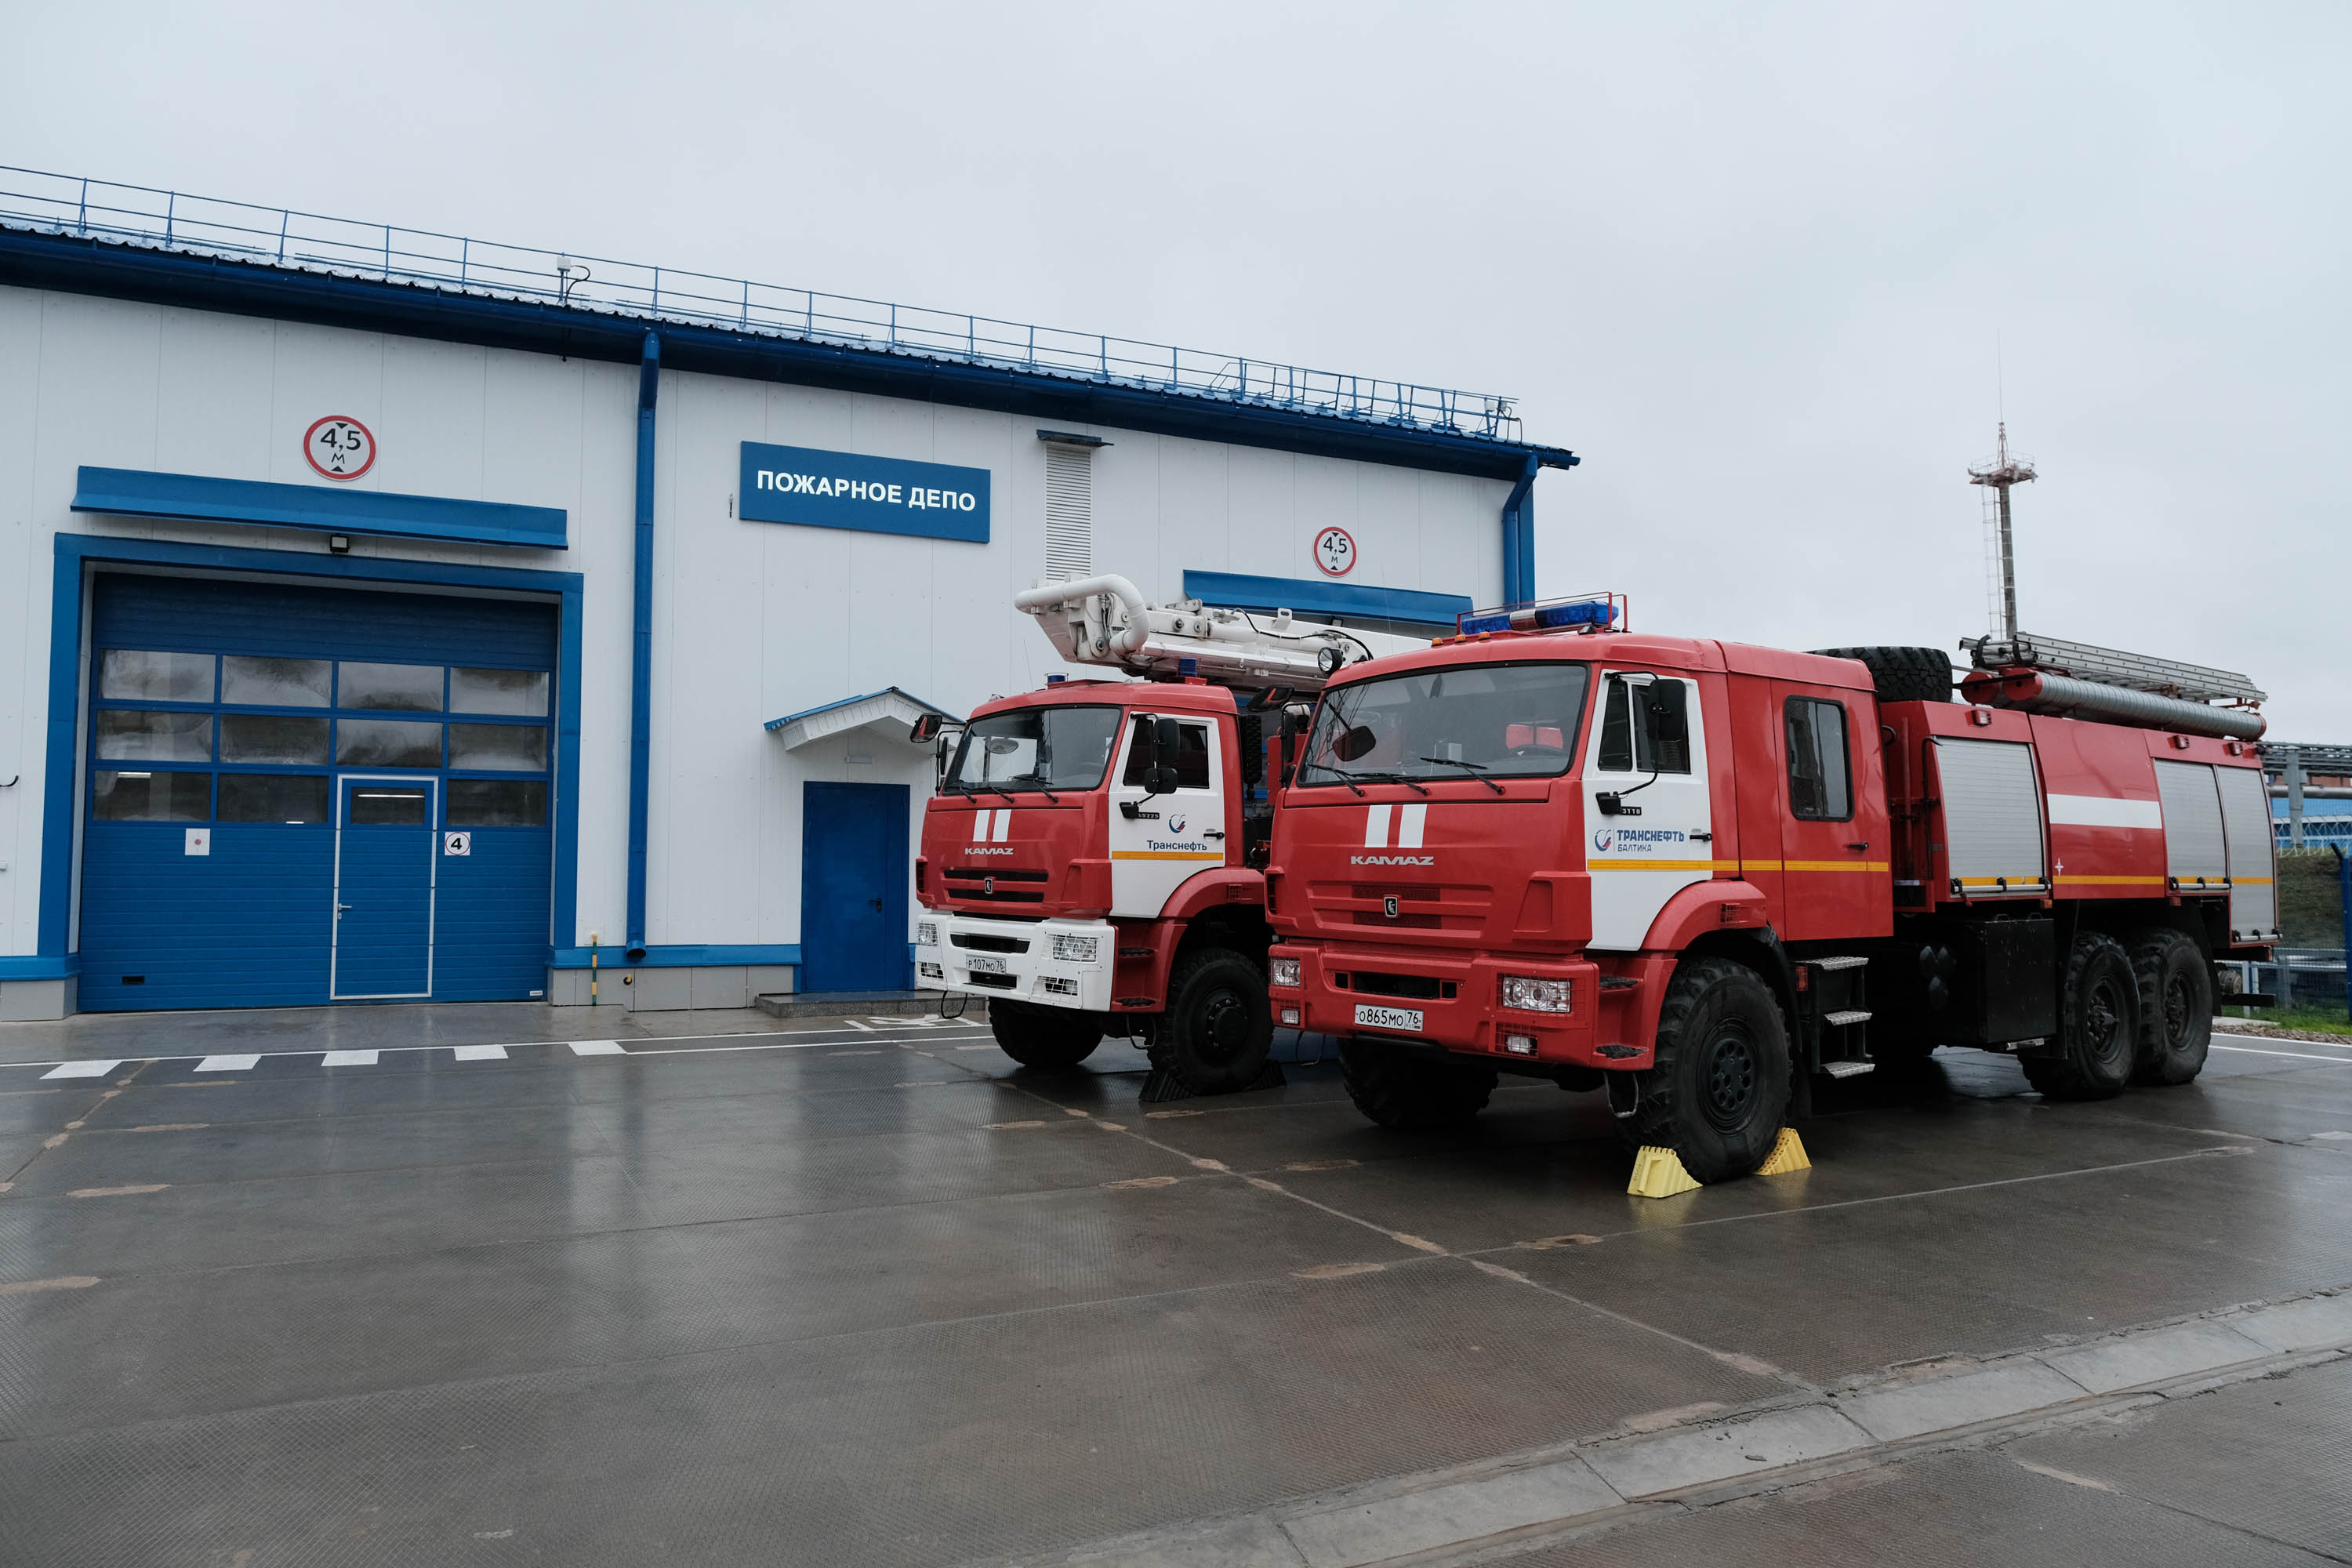 фото: ООО «Транснефть – Балтика» построило пожарное депо для обеспечения защиты НПС «Палкино»